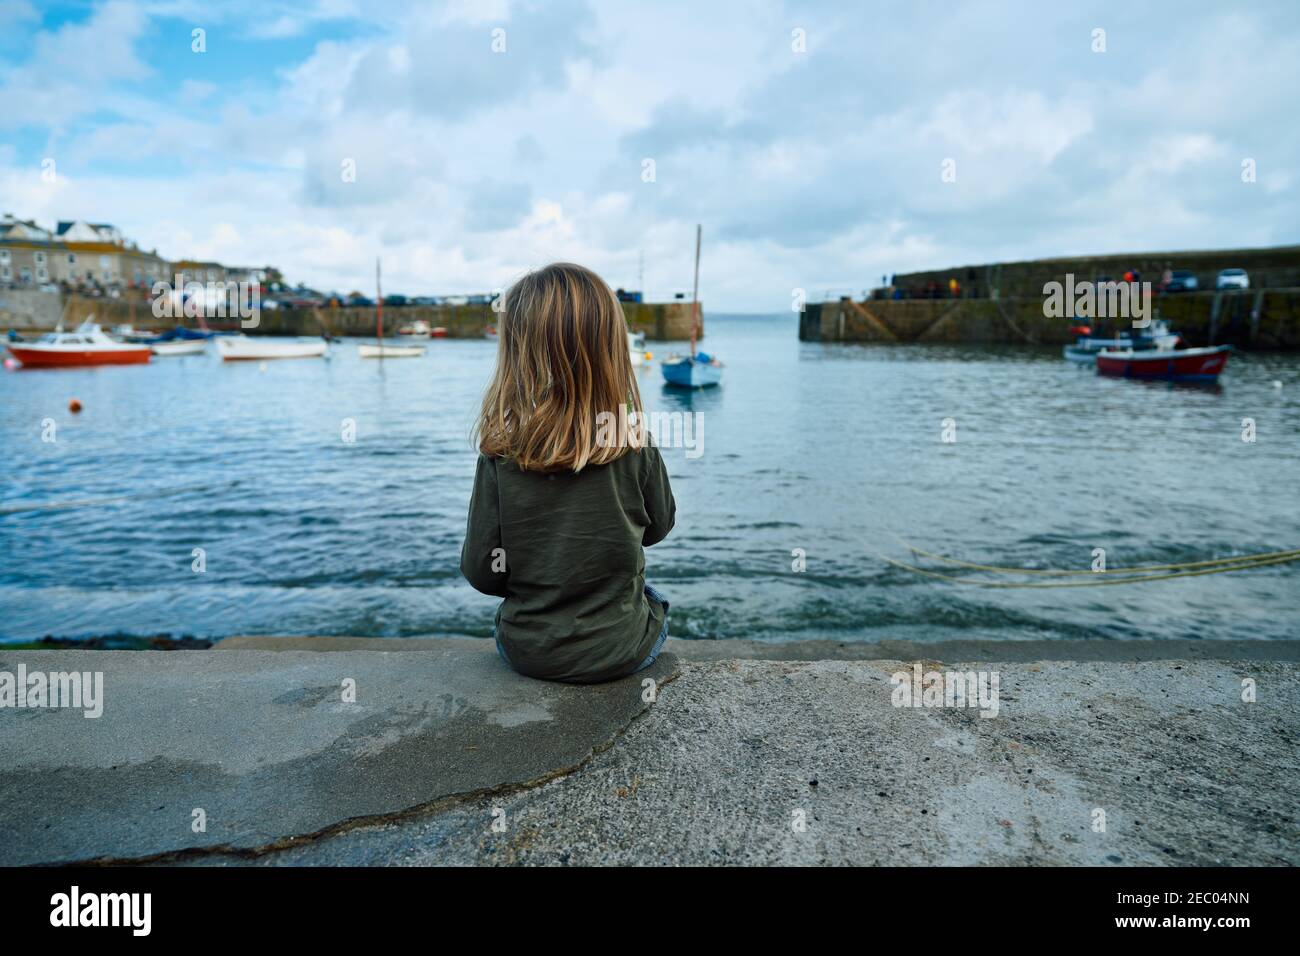 Un petit avant-chooler est assis dans le port d'un village de pêcheurs anglais Banque D'Images